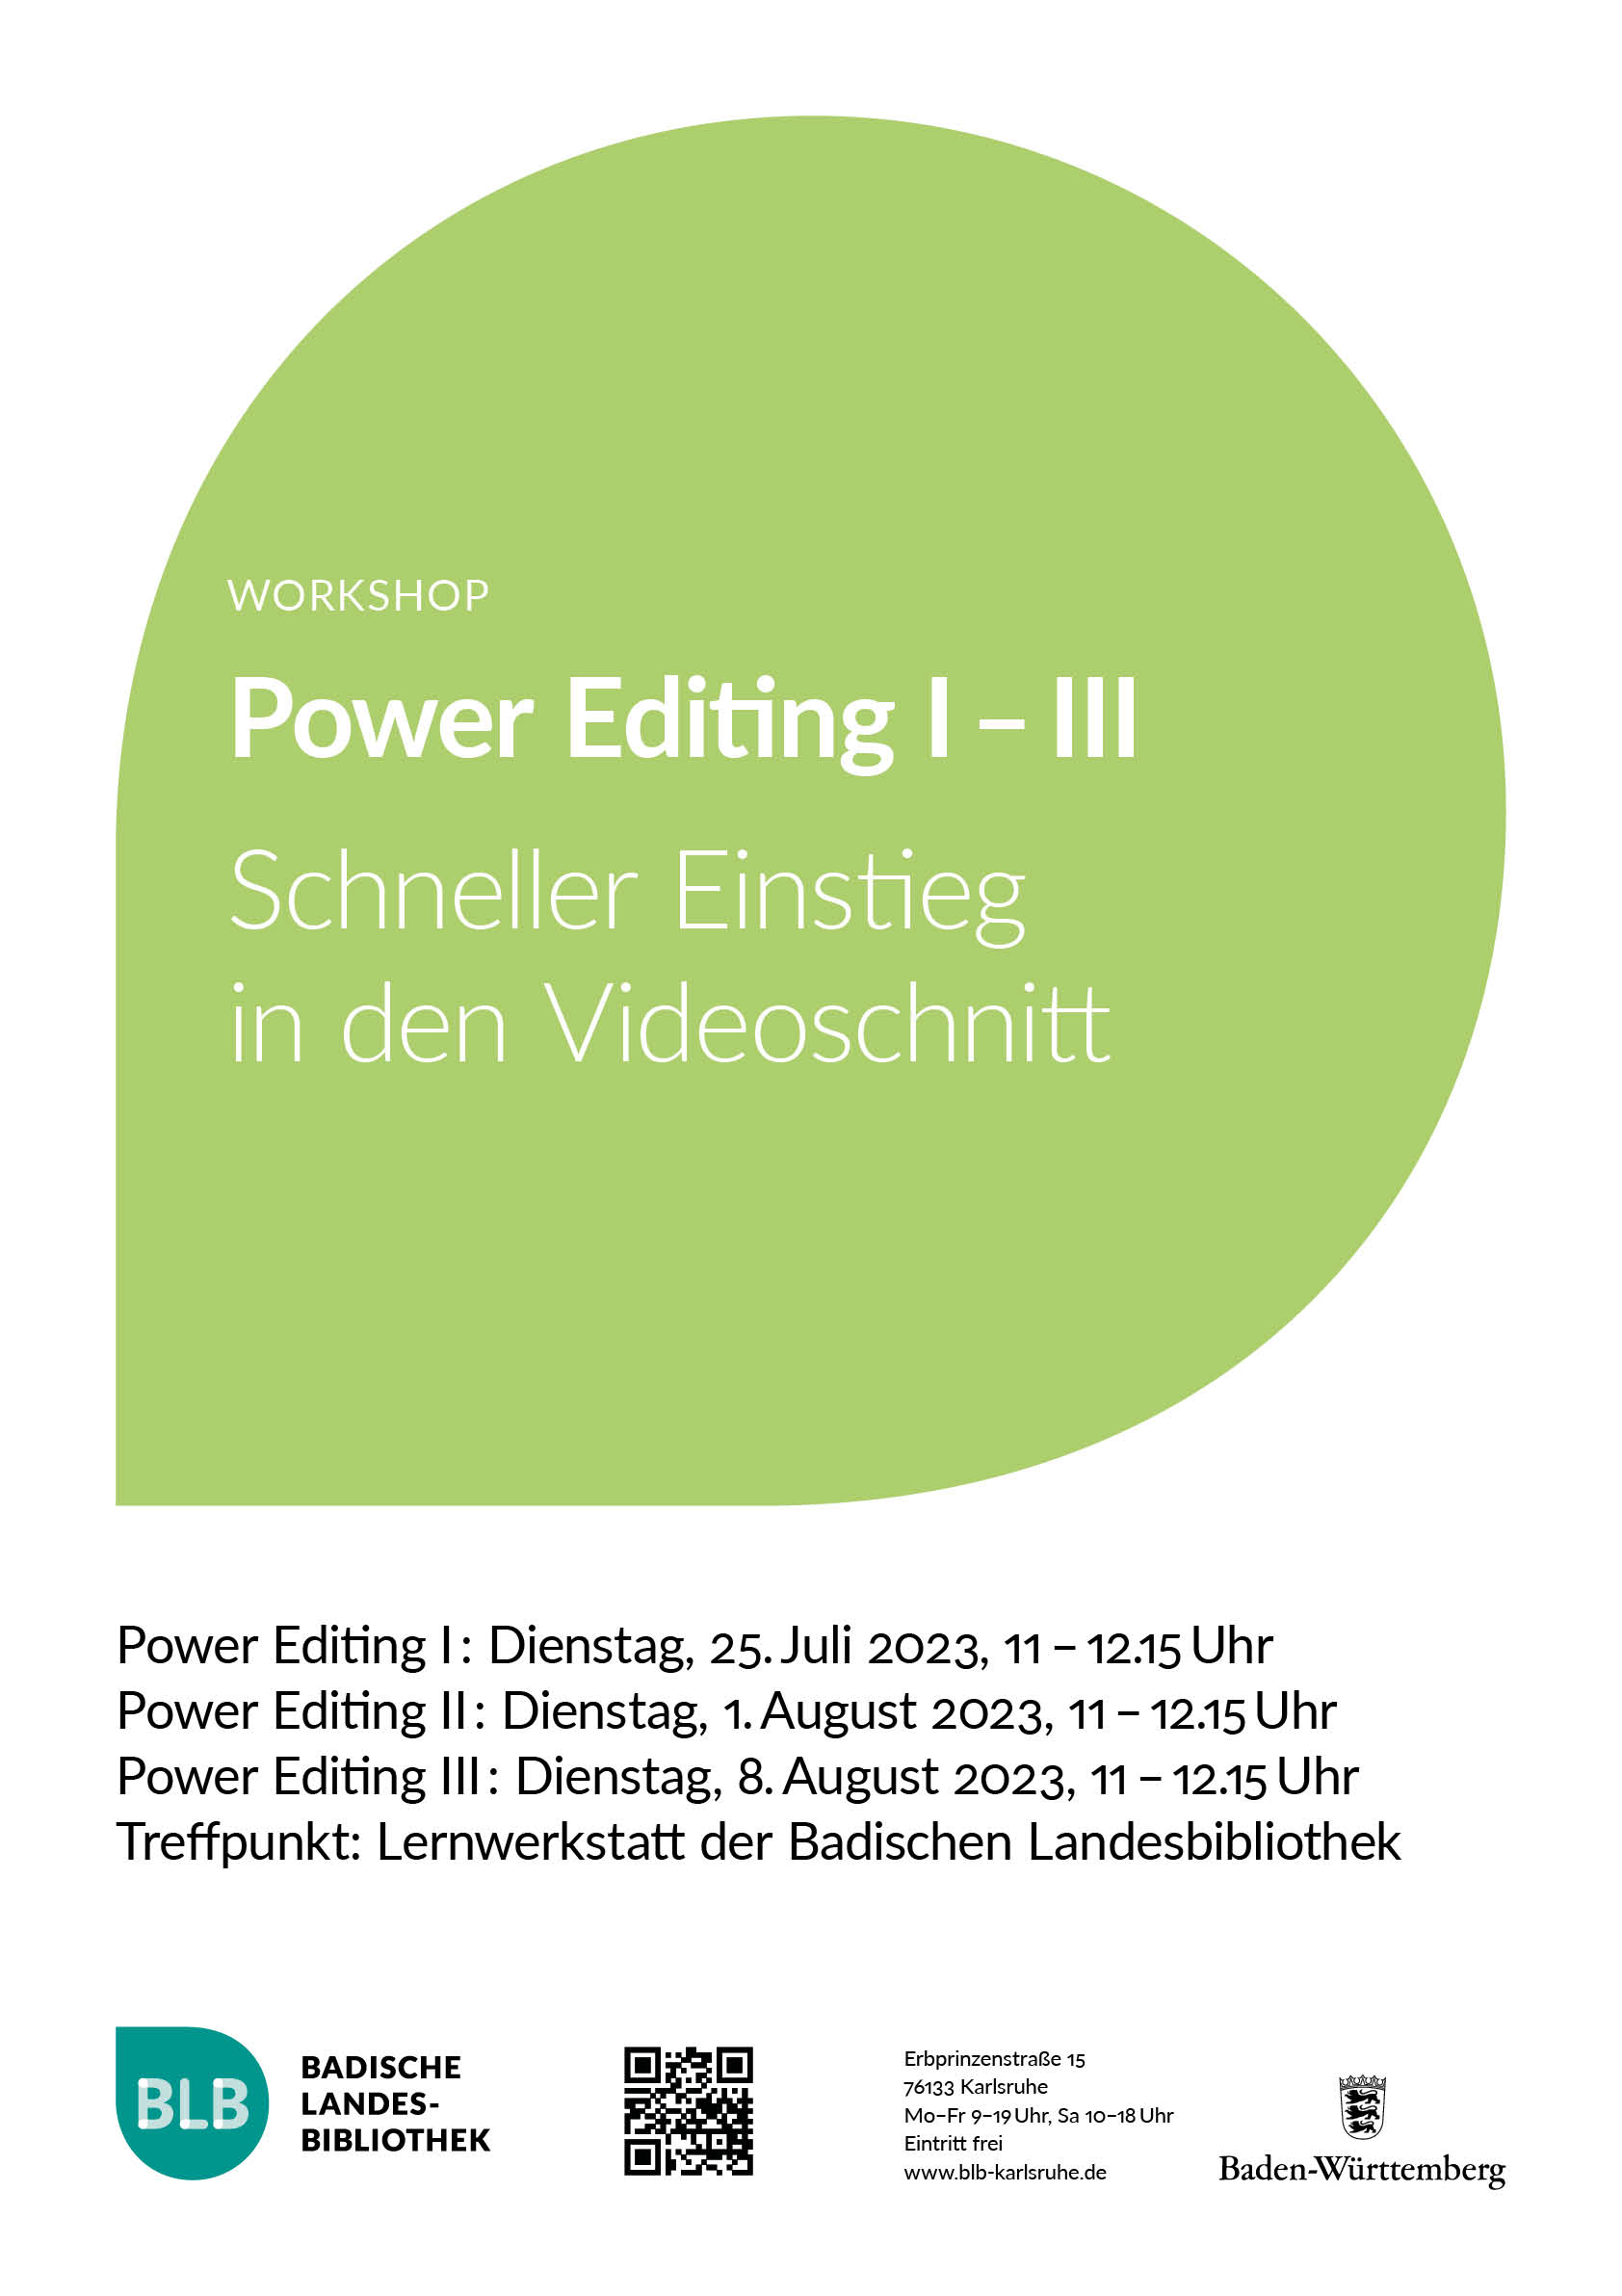 Zu sehen ist ein grünes Monogon mit der Aufschrift "Power Editing I-III. Schneller Einstieg in den Videoschnitt." Der Workshop findet dreimal, am Dienstag, dem 25.07.2023, am Dienstag, dem 1.8.2023 und am Dienstag, dem 8.8.2023 von 11-12.15 Uhr statt. 